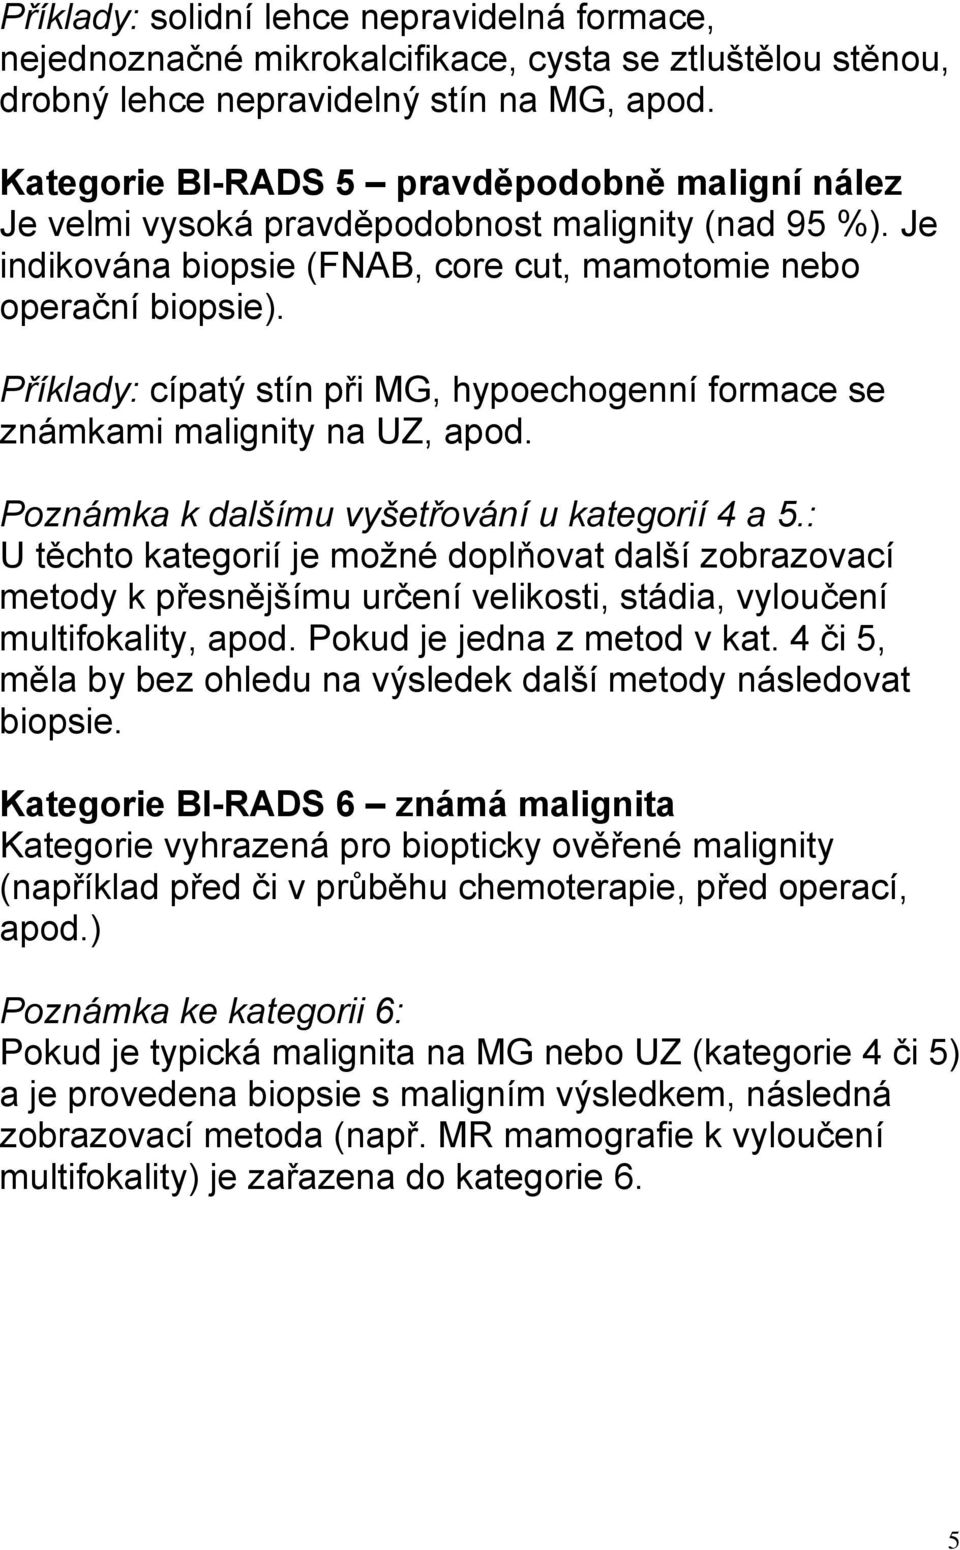 Příklady: cípatý stín při MG, hypoechogenní formace se známkami malignity na UZ, apod. Poznámka k dalšímu vyšetřování u kategorií 4 a 5.